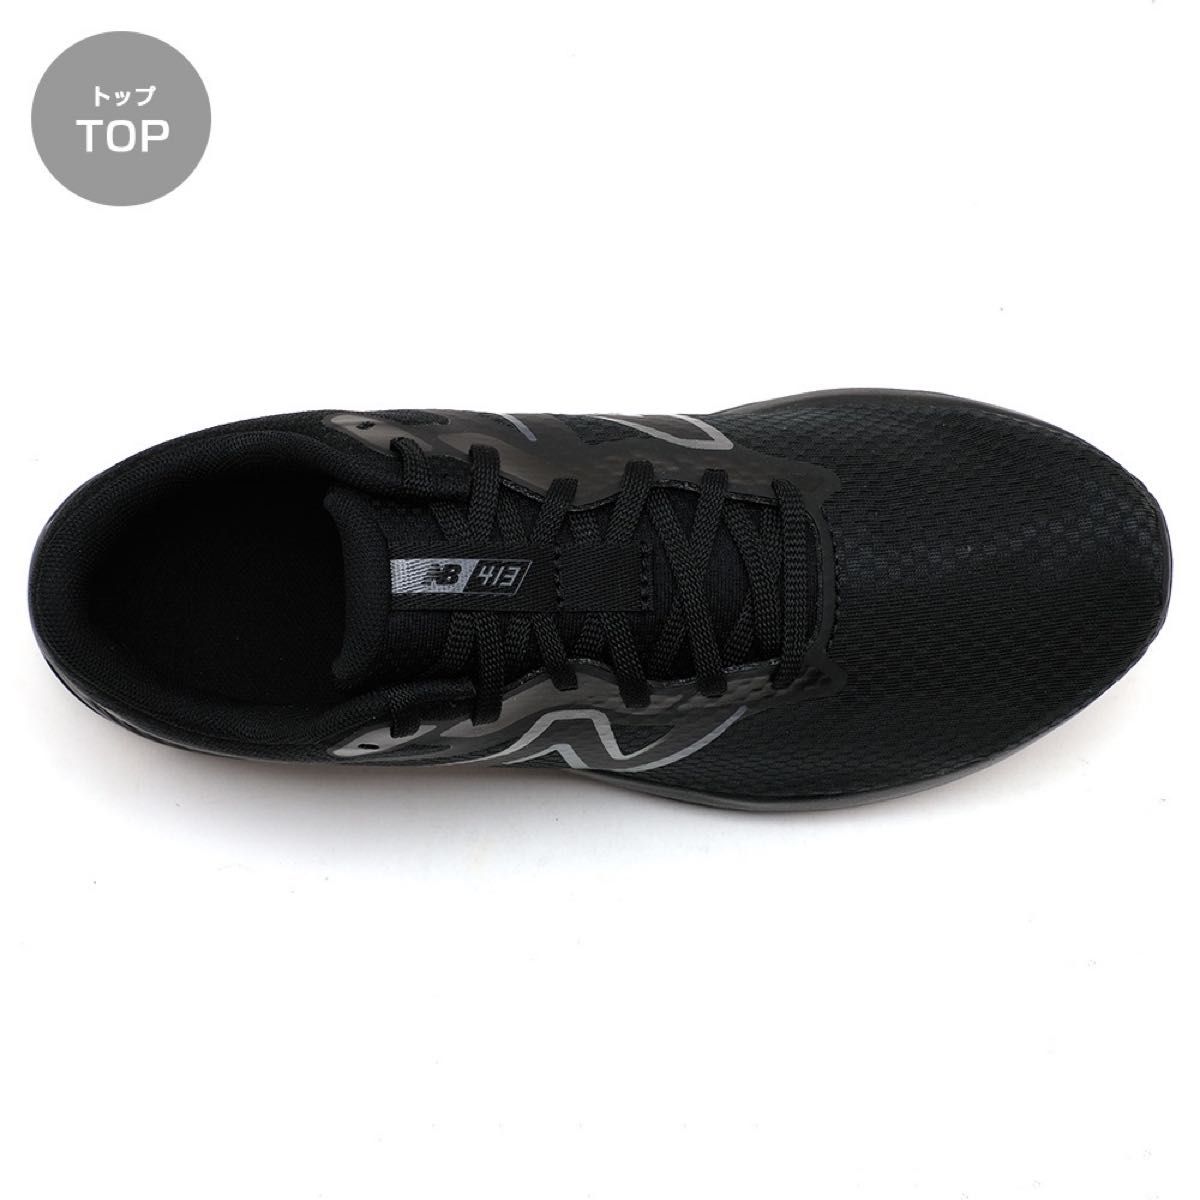 ニューバランス メンズ スニーカー ブラック 黒 25cm ランニング ジョギング ウォーキング トレーニング 散歩 通勤 靴